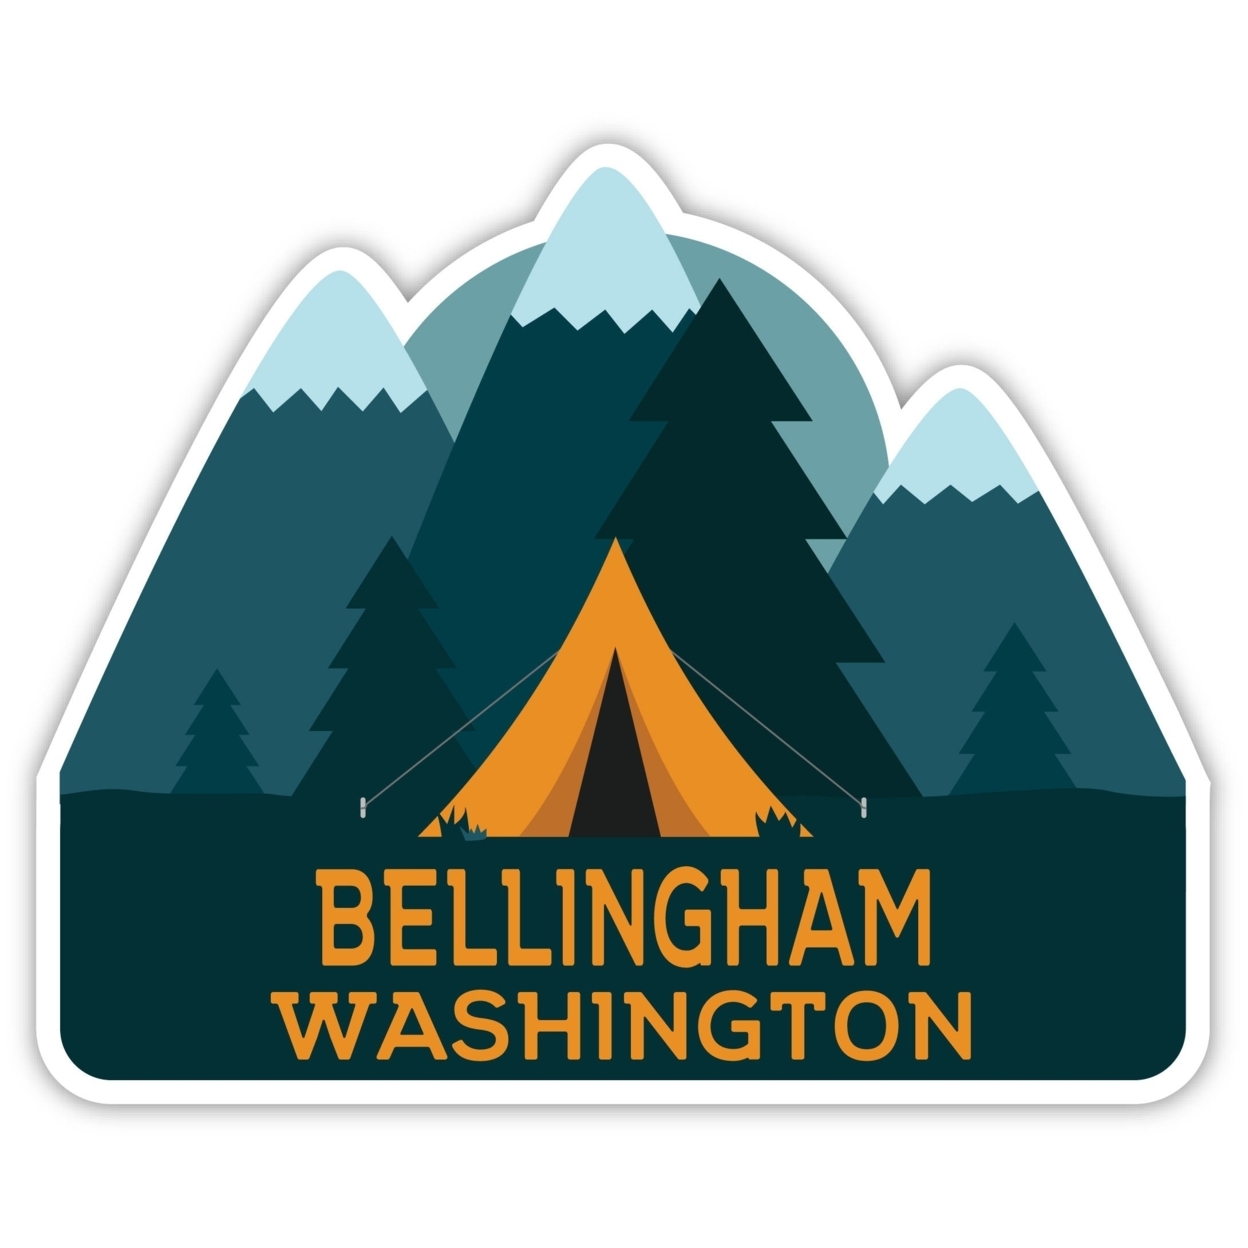 Bellingham Washington Souvenir Decorative Stickers (Choose Theme And Size) - Single Unit, 2-Inch, Tent